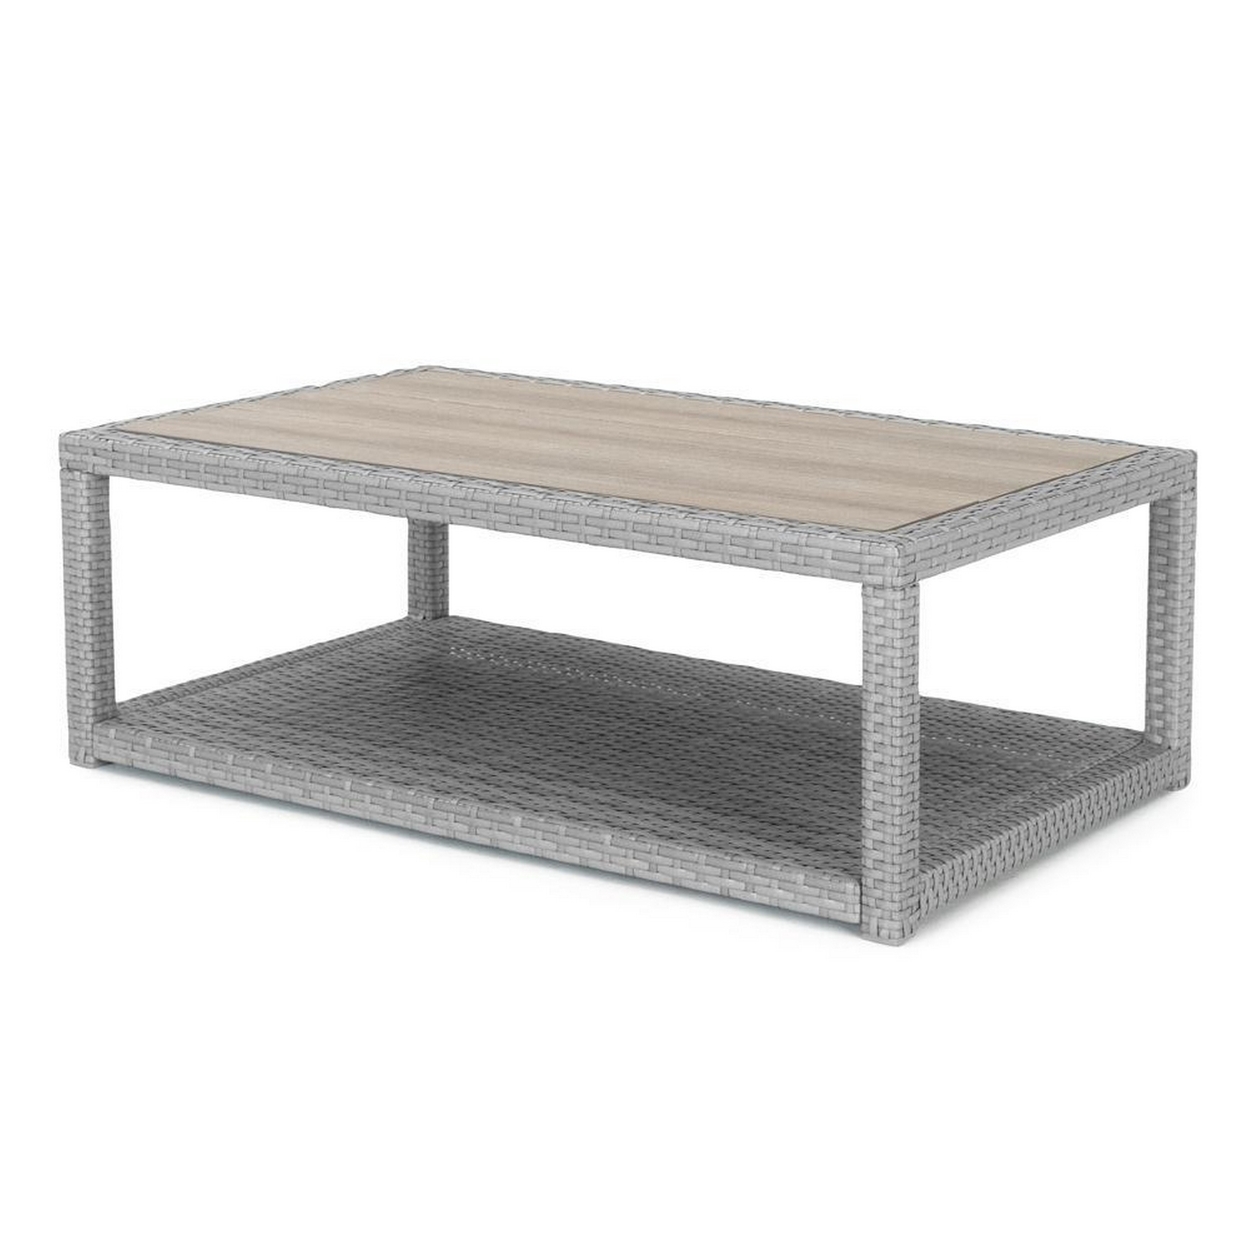 Coco 46 Inch Modern Patio Coffee Table With Shelf, Wicker Frame, Gray- Saltoro Sherpi